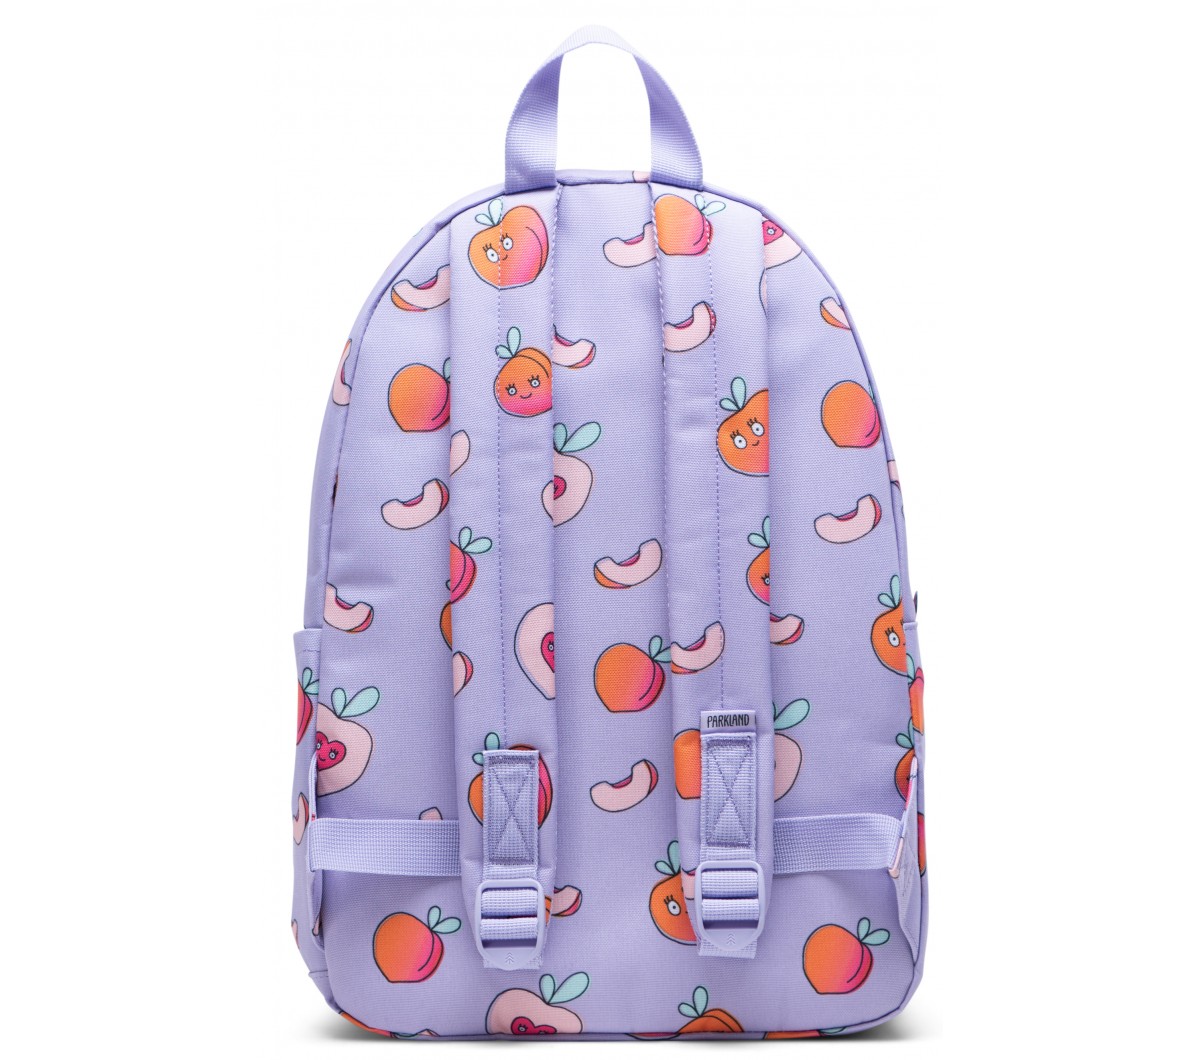 https://www.orangemayonnaise.com/image/shrink/109456/1200/1060/parkland-bayside-youth-backpack-peachy-parkland-bayside-youth-backpack-peachy.jpg